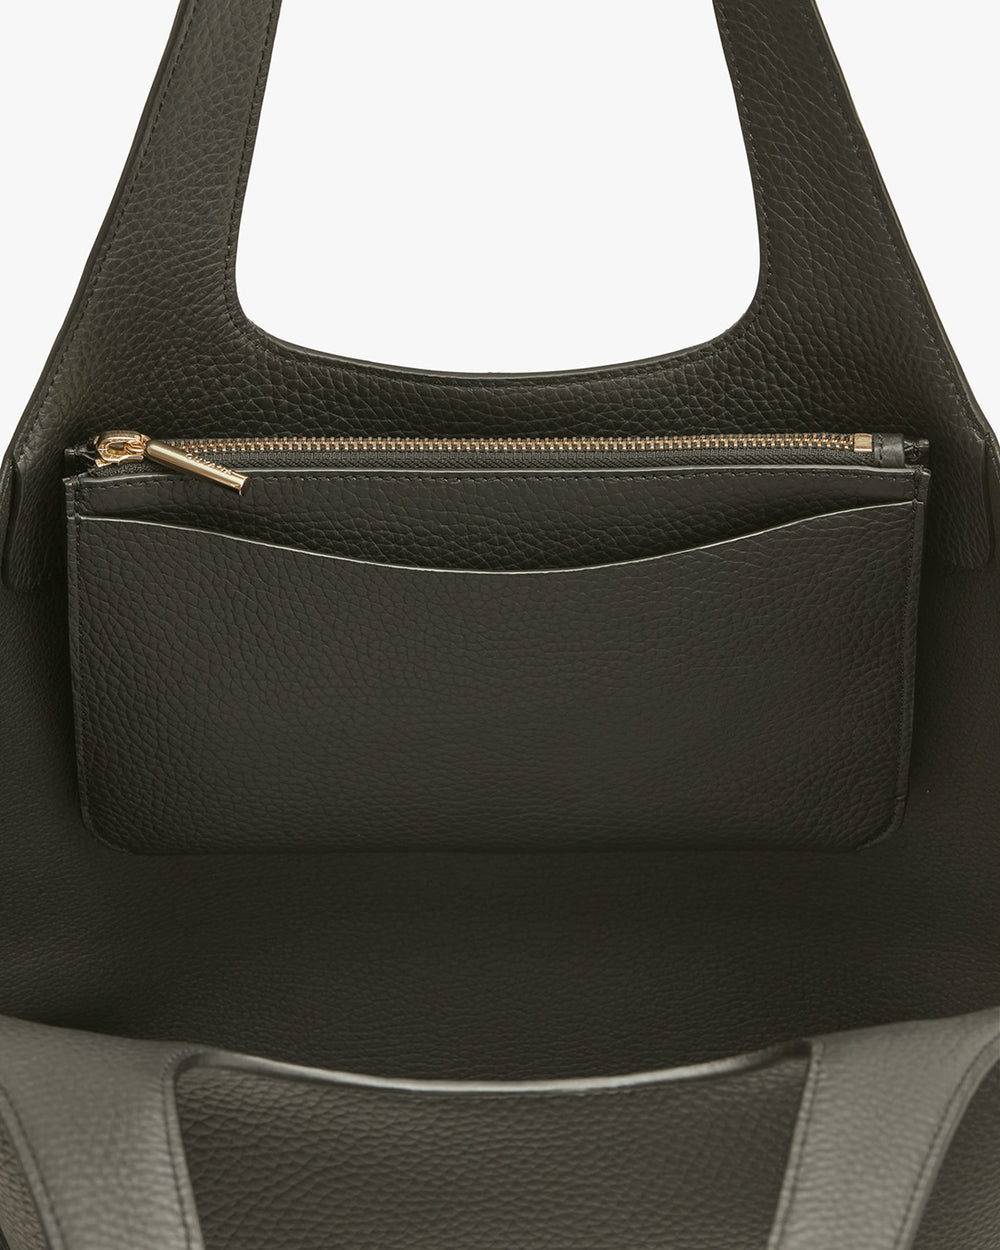 Close-up of a handbag with a zippered pocket.